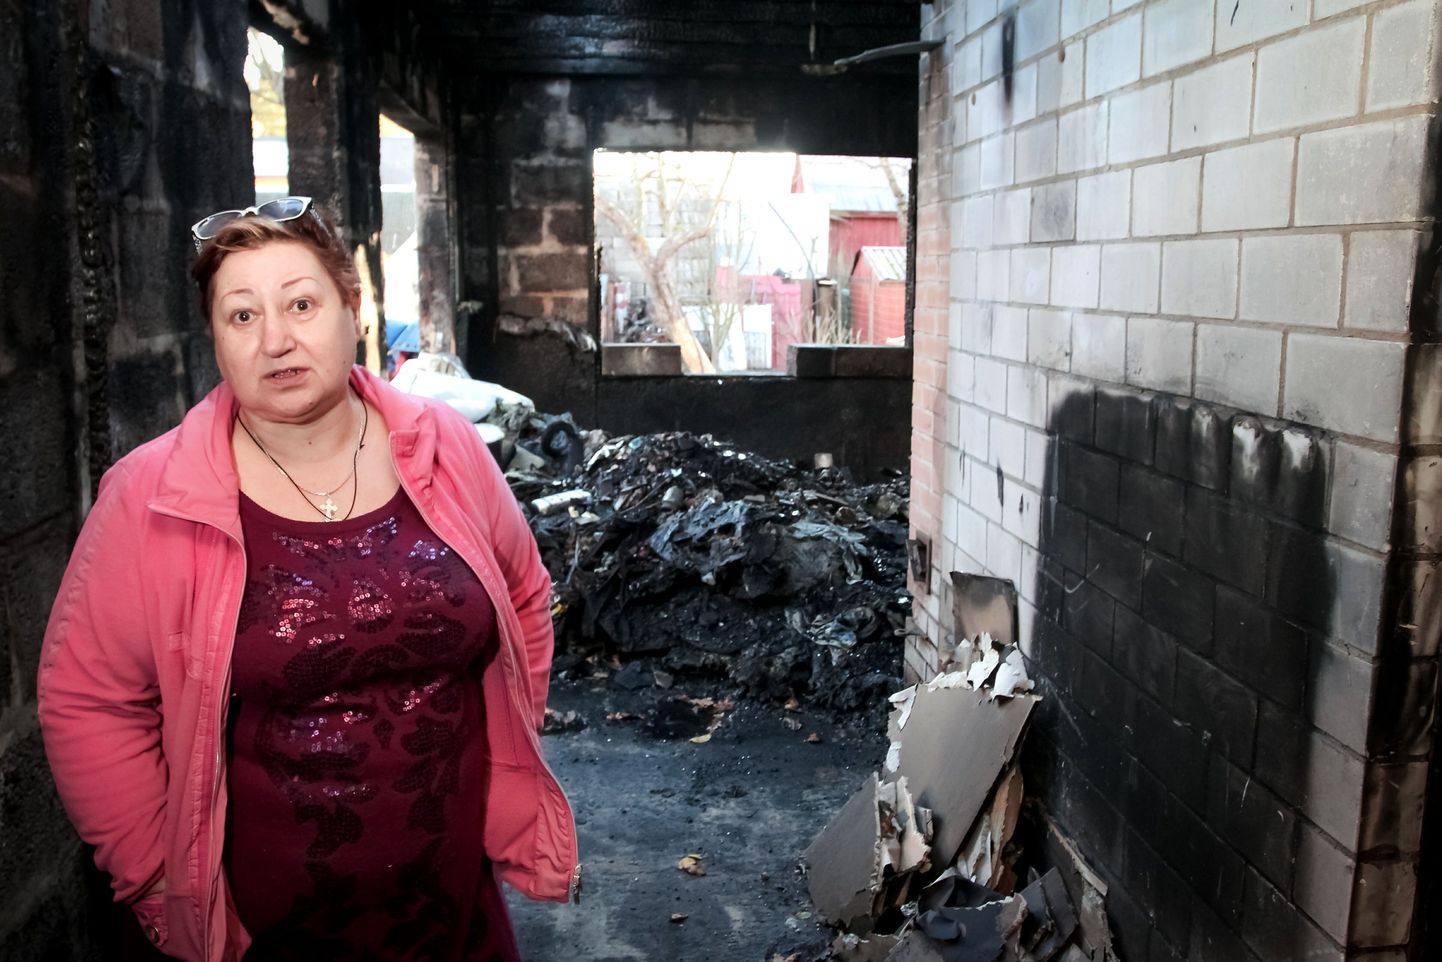 Тамара Мурзина пострадала во время пожара, теперь вынуждена страдать,  пытаясь договориться со страховщиками о компенсации ущерба.